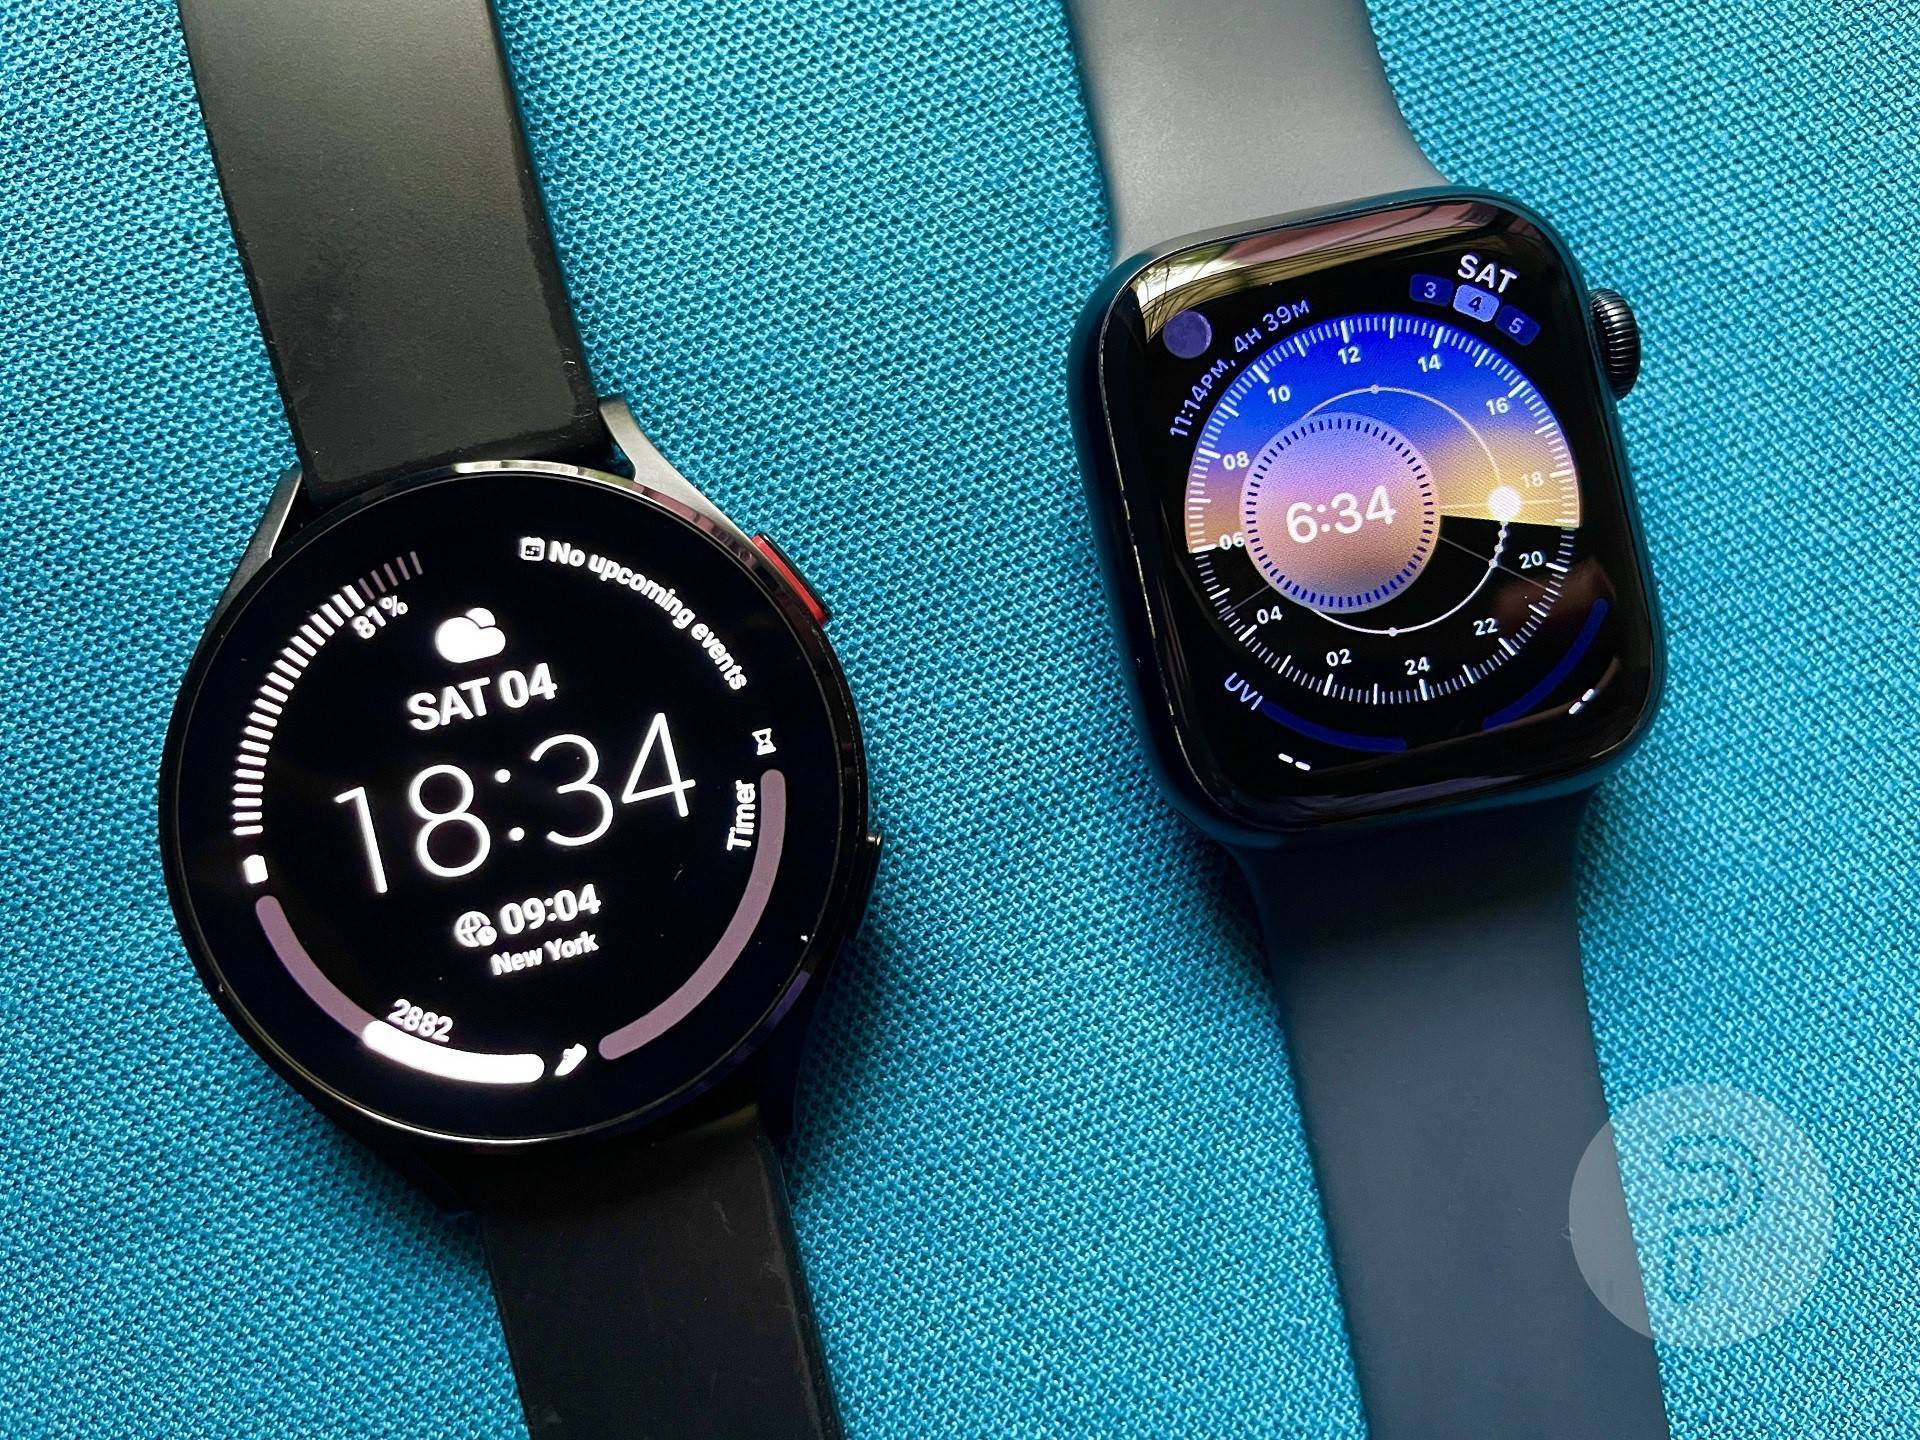 Galaxy Watch 4 und Apple Watch Series 7 auf einer Stoffoberfläche platziert